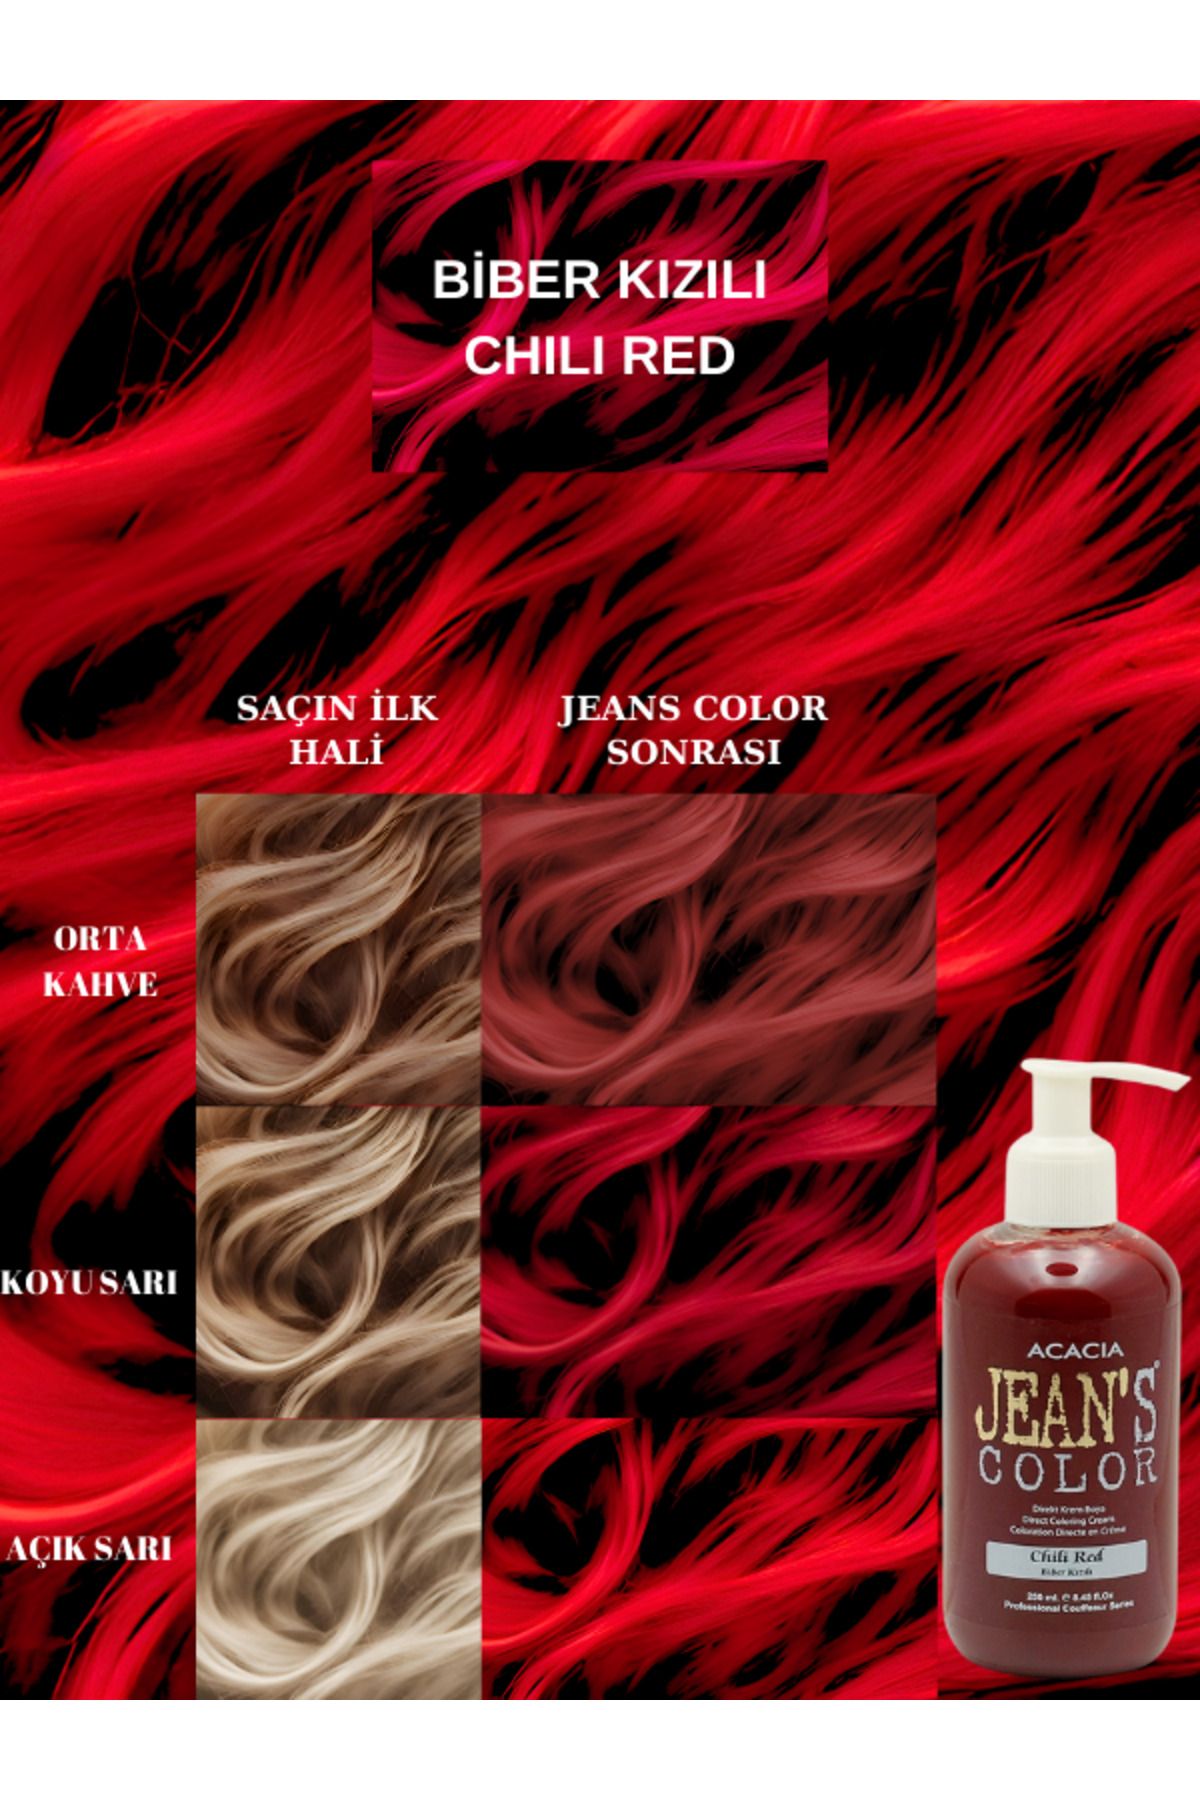 jeans color Amonyaksız Renkli Saç Boyası Biber Kızılı 250ml. Kokusuz Su Bazlı Chili Red Hair Dye